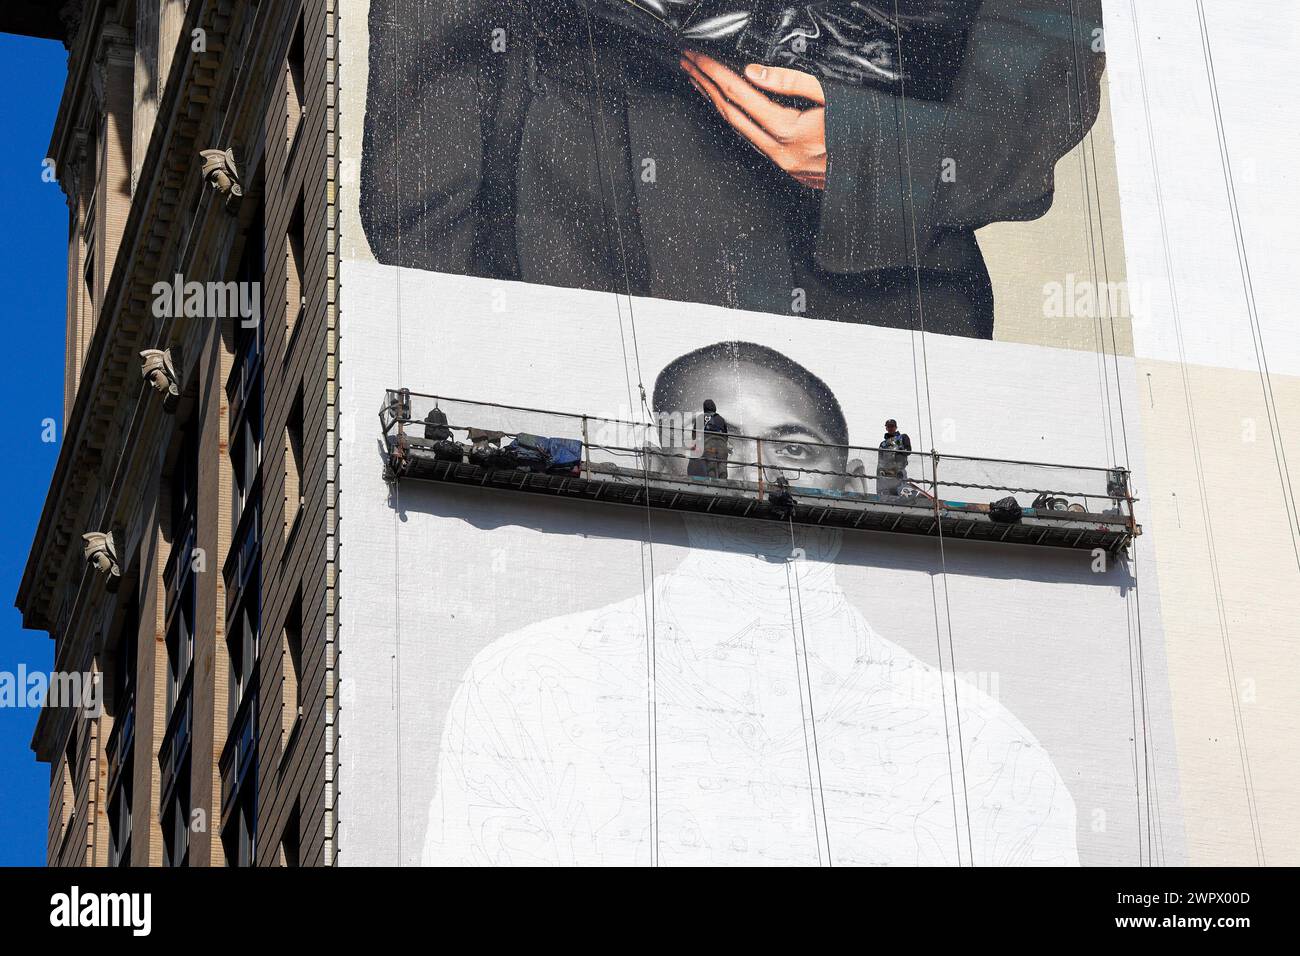 Artistes commerciaux, peintres sur un échafaudage suspendu à la main peignant un panneau publicitaire sur le côté d'un immeuble de grande hauteur à New York. Banque D'Images